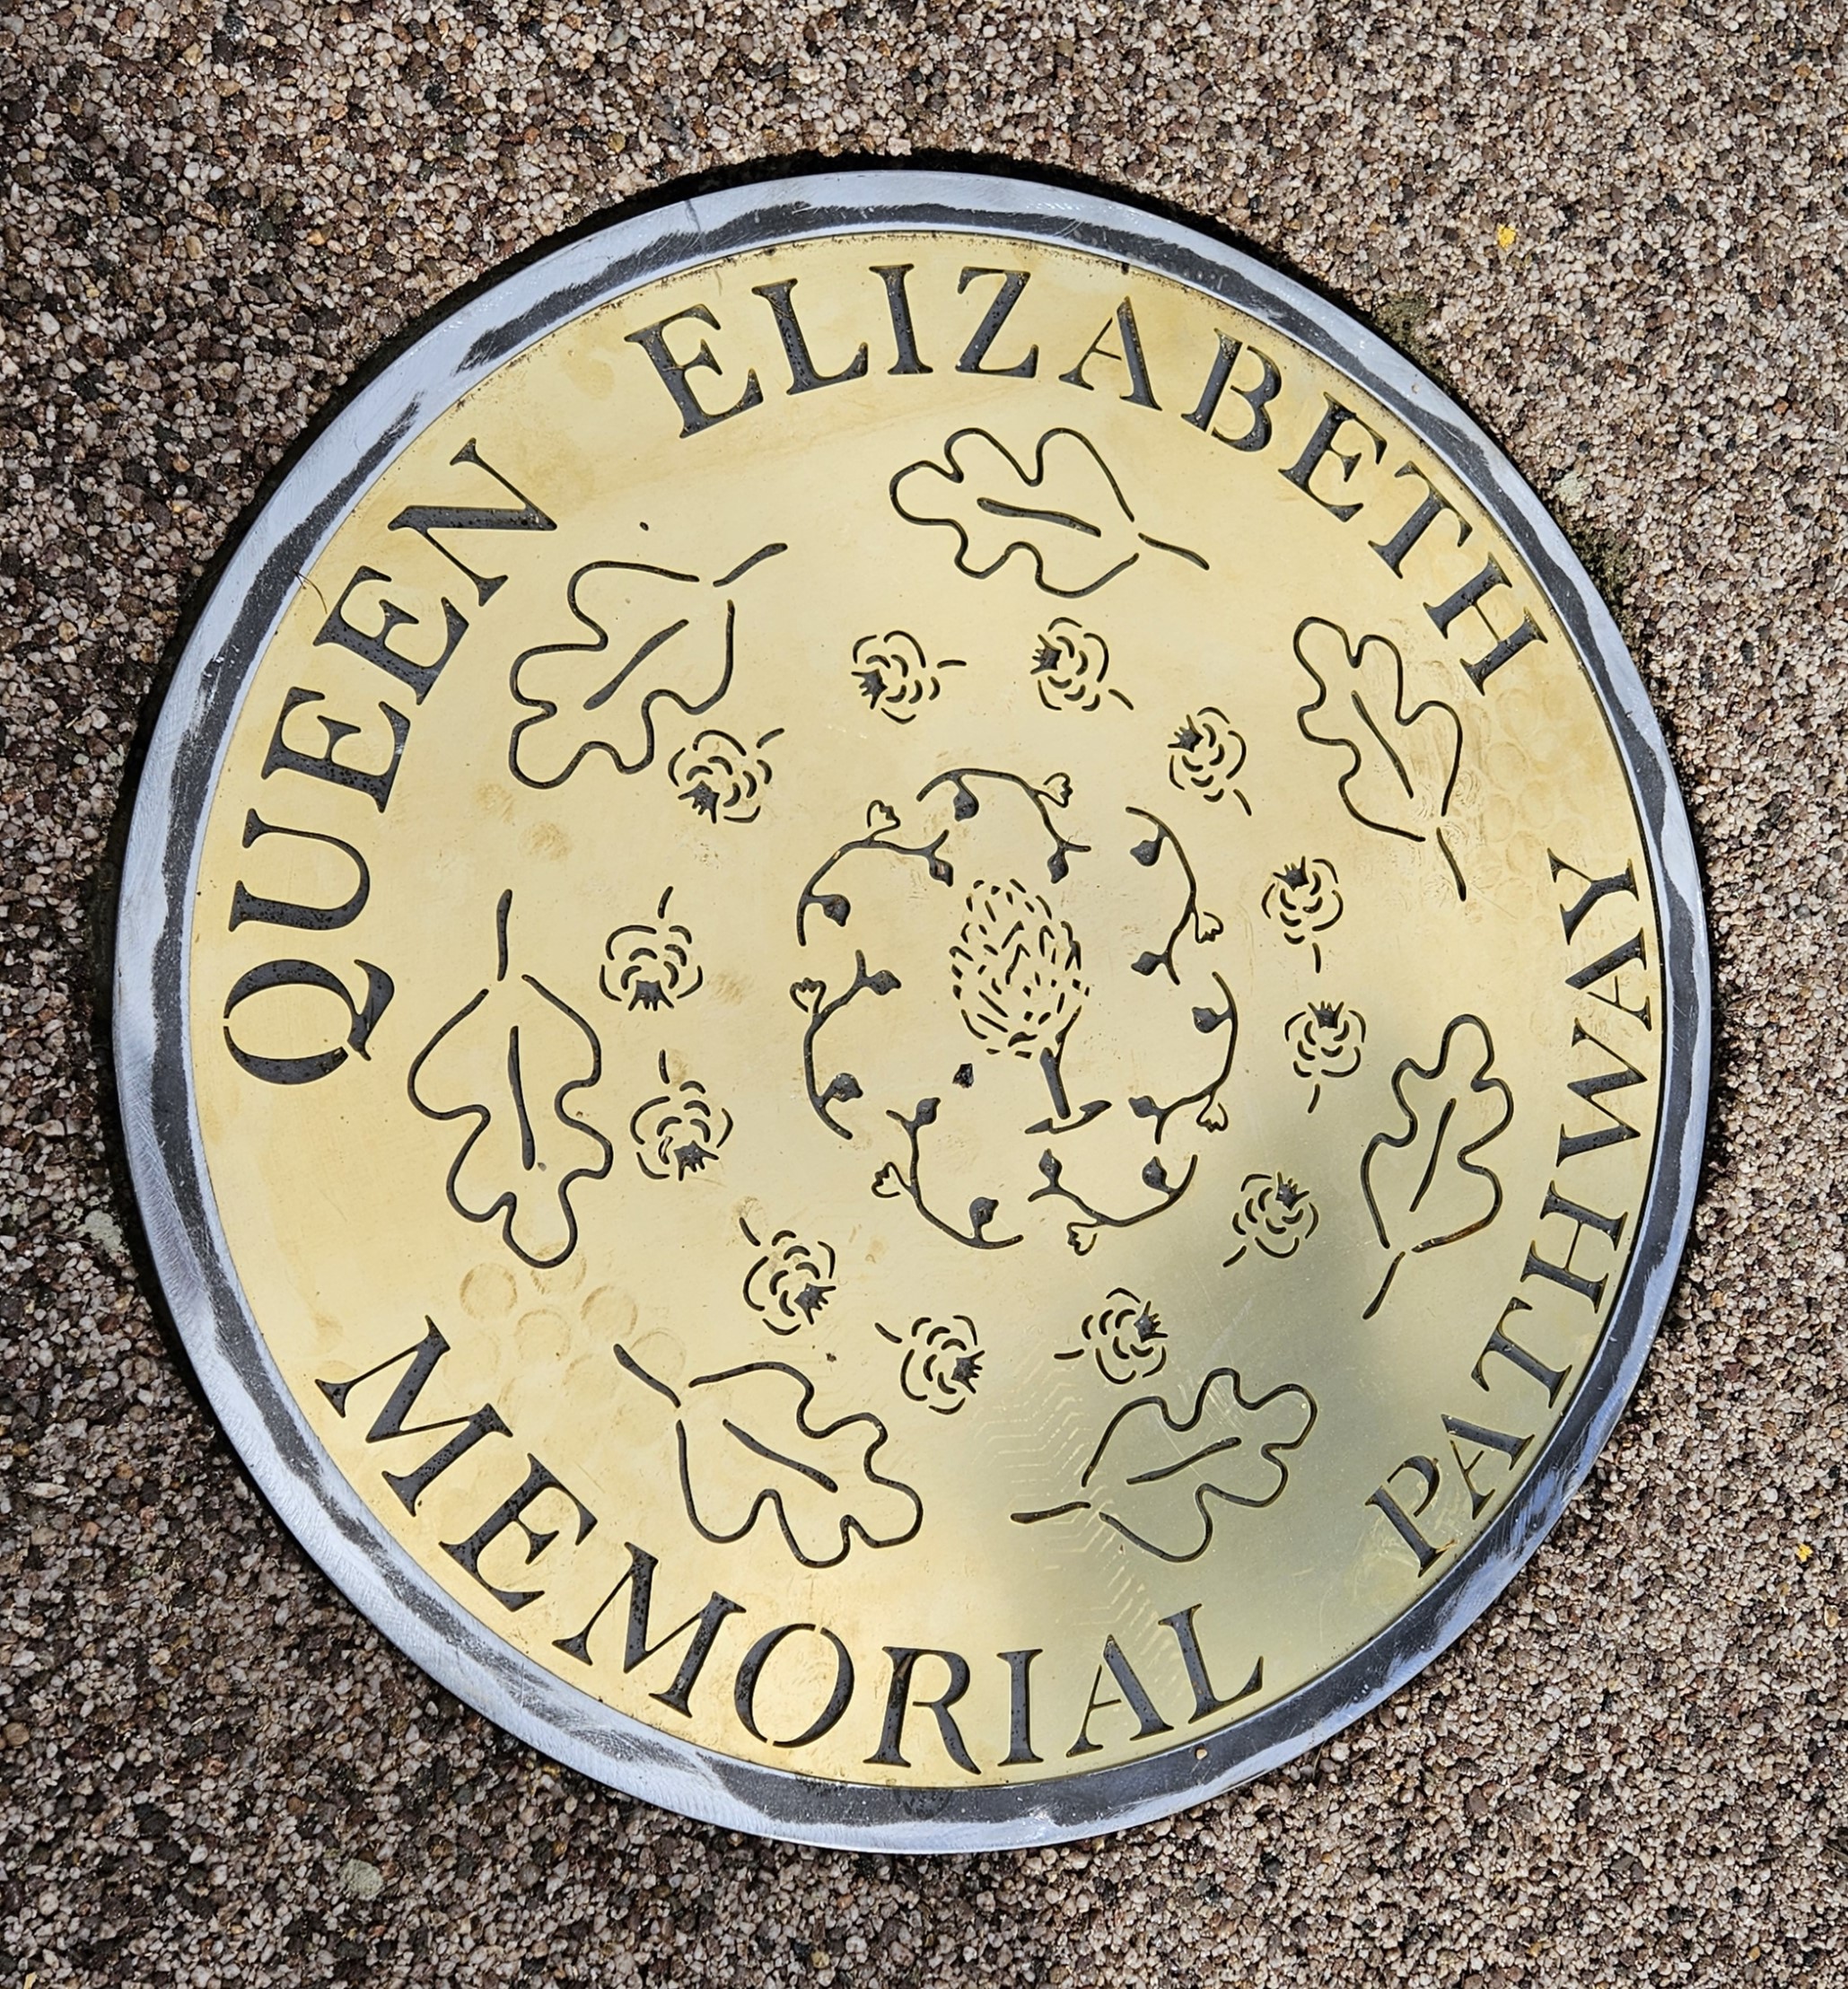 Queen elizabeth memorial pathway disc